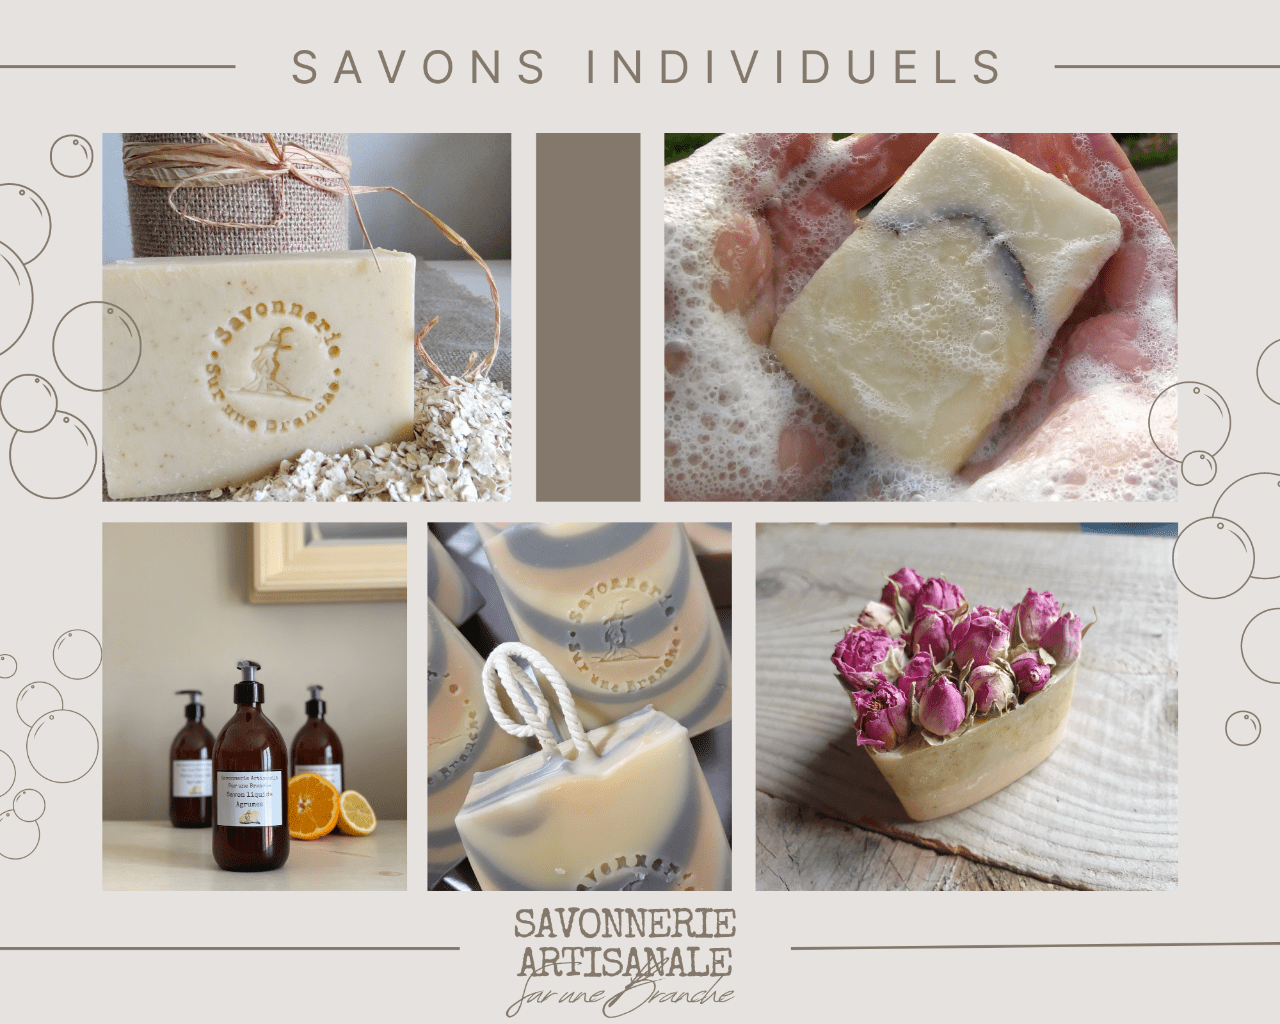 savons__individuels_boutique_savonnerie_artisanale_sur_une_branche.png